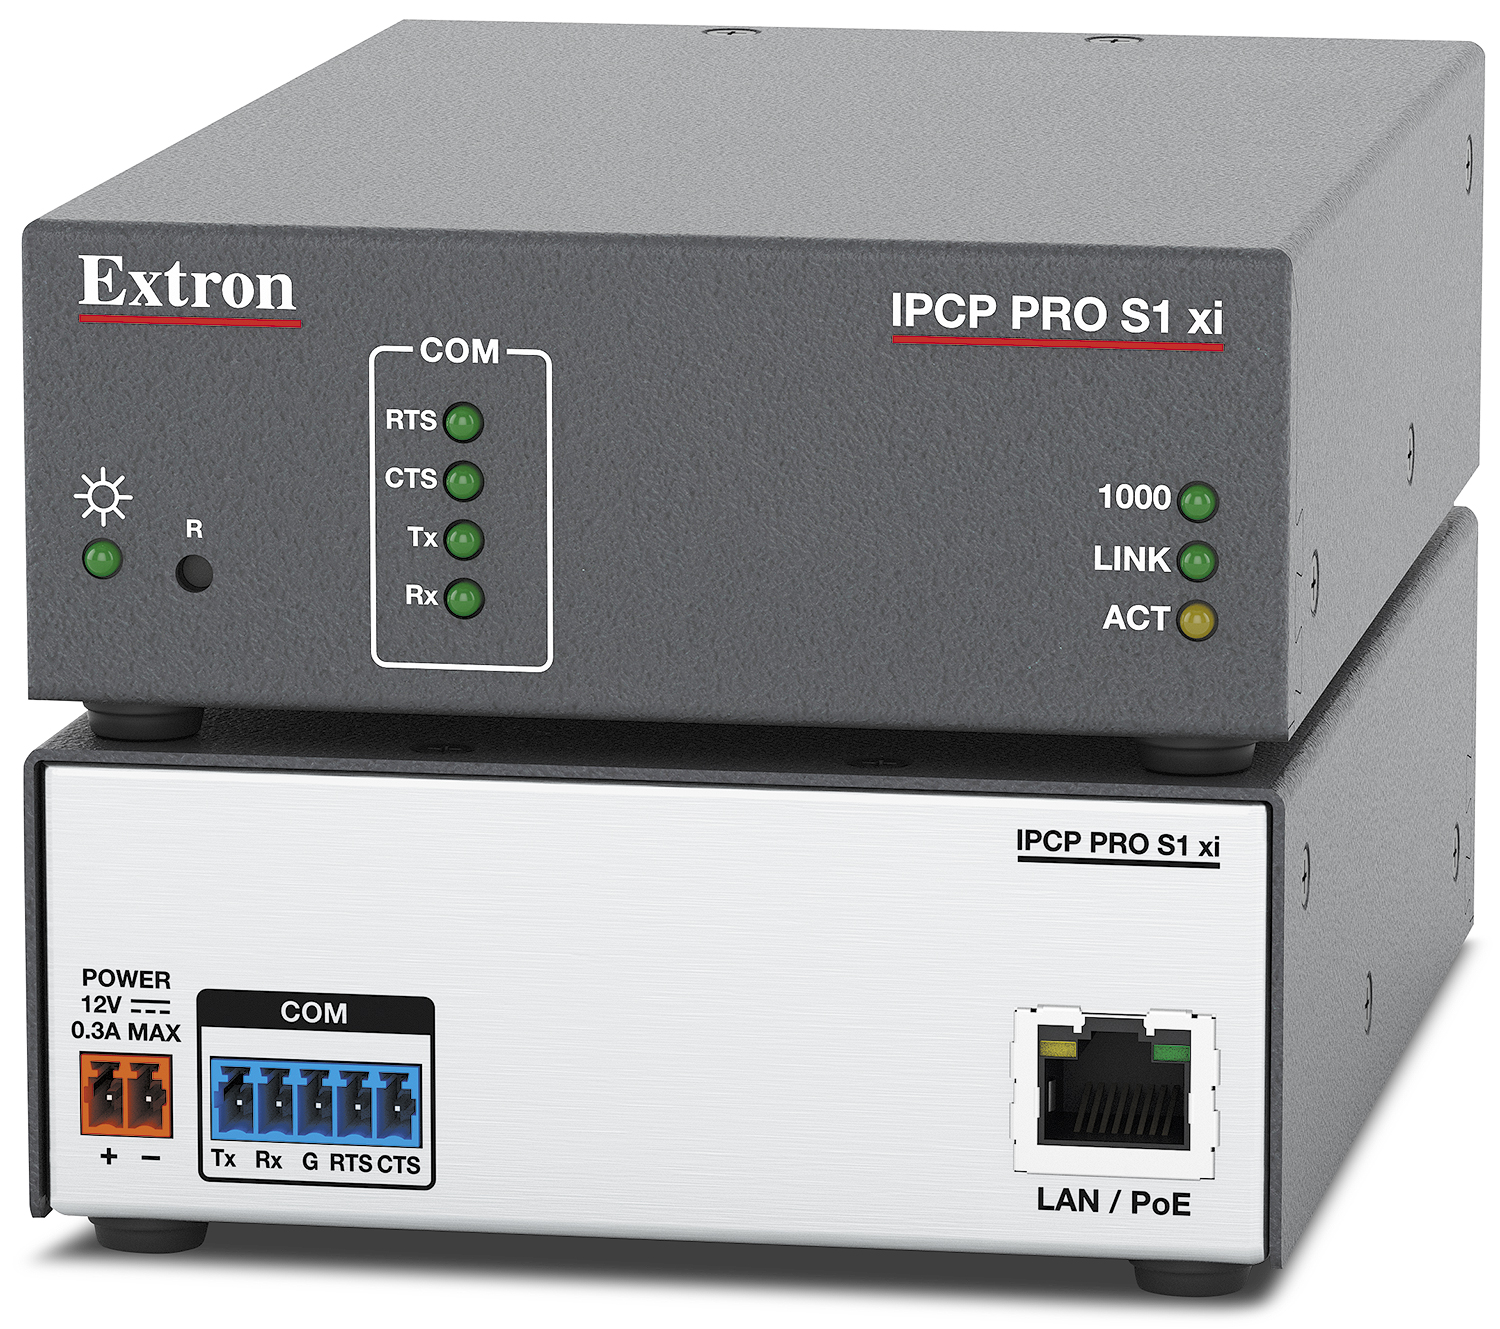 IPCP Pro S1 xi